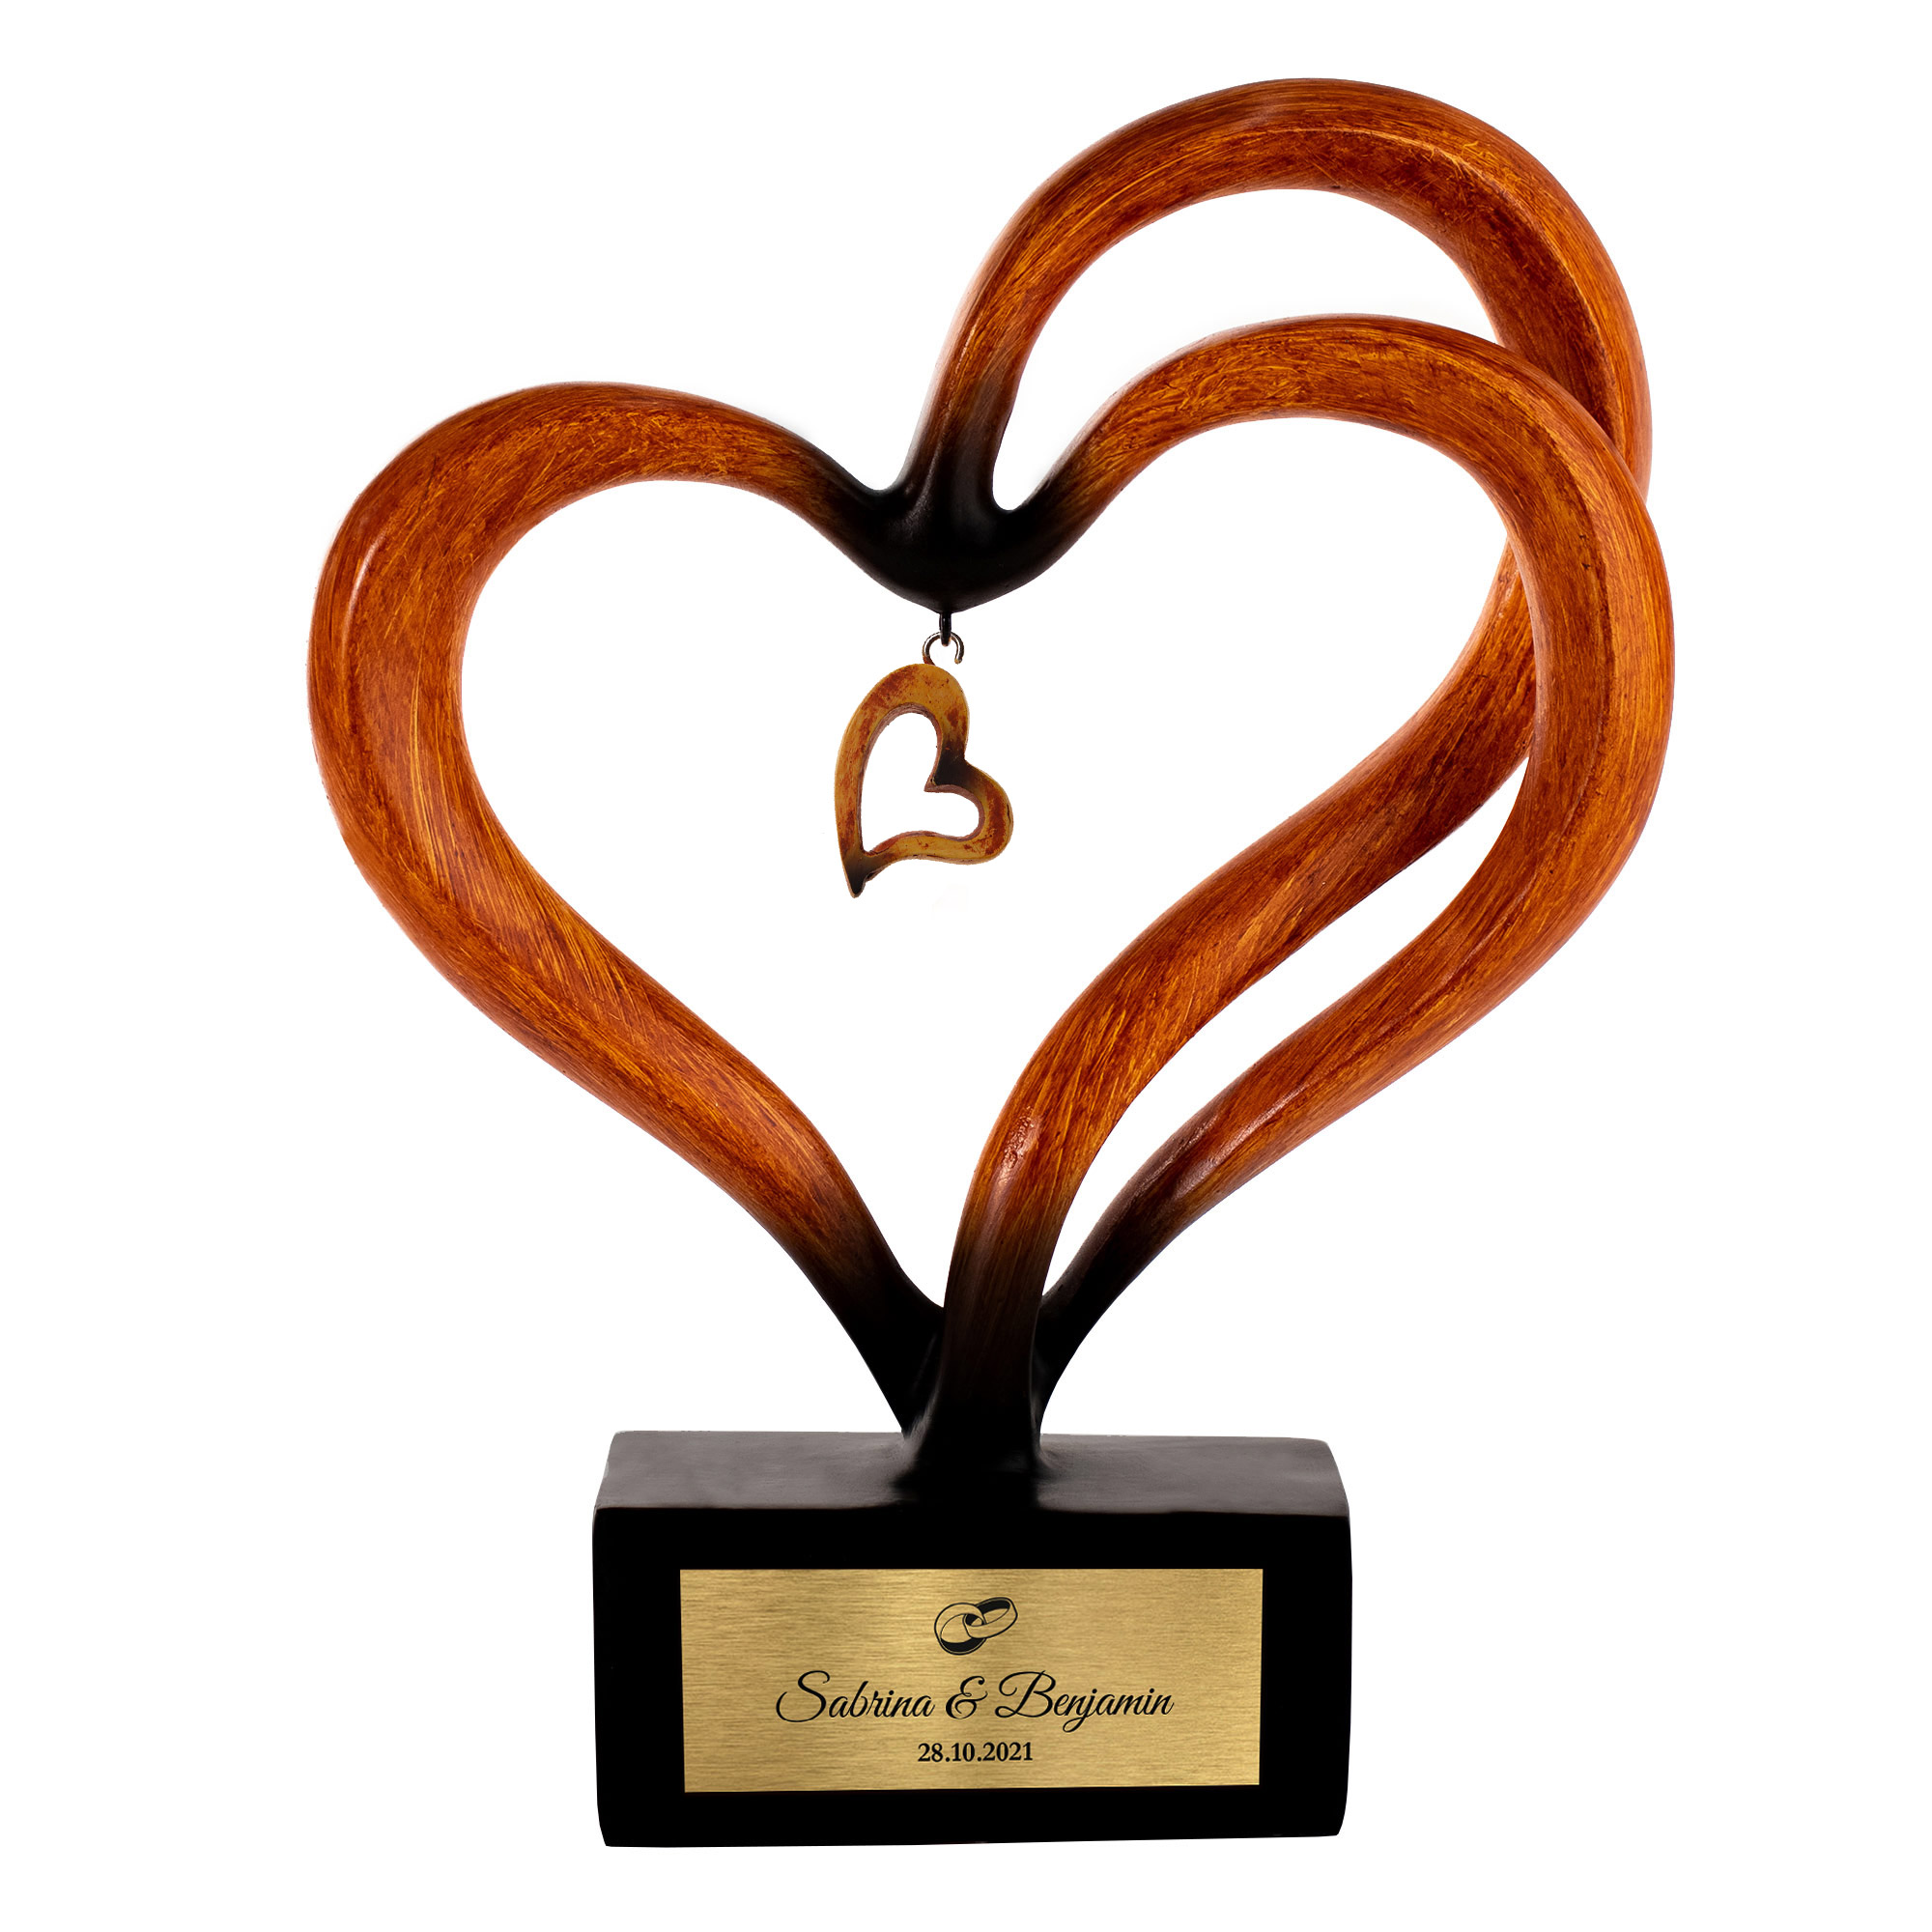 Holz Herz Skulptur - Hochzeit 0021-0008-EU-0001 - 5